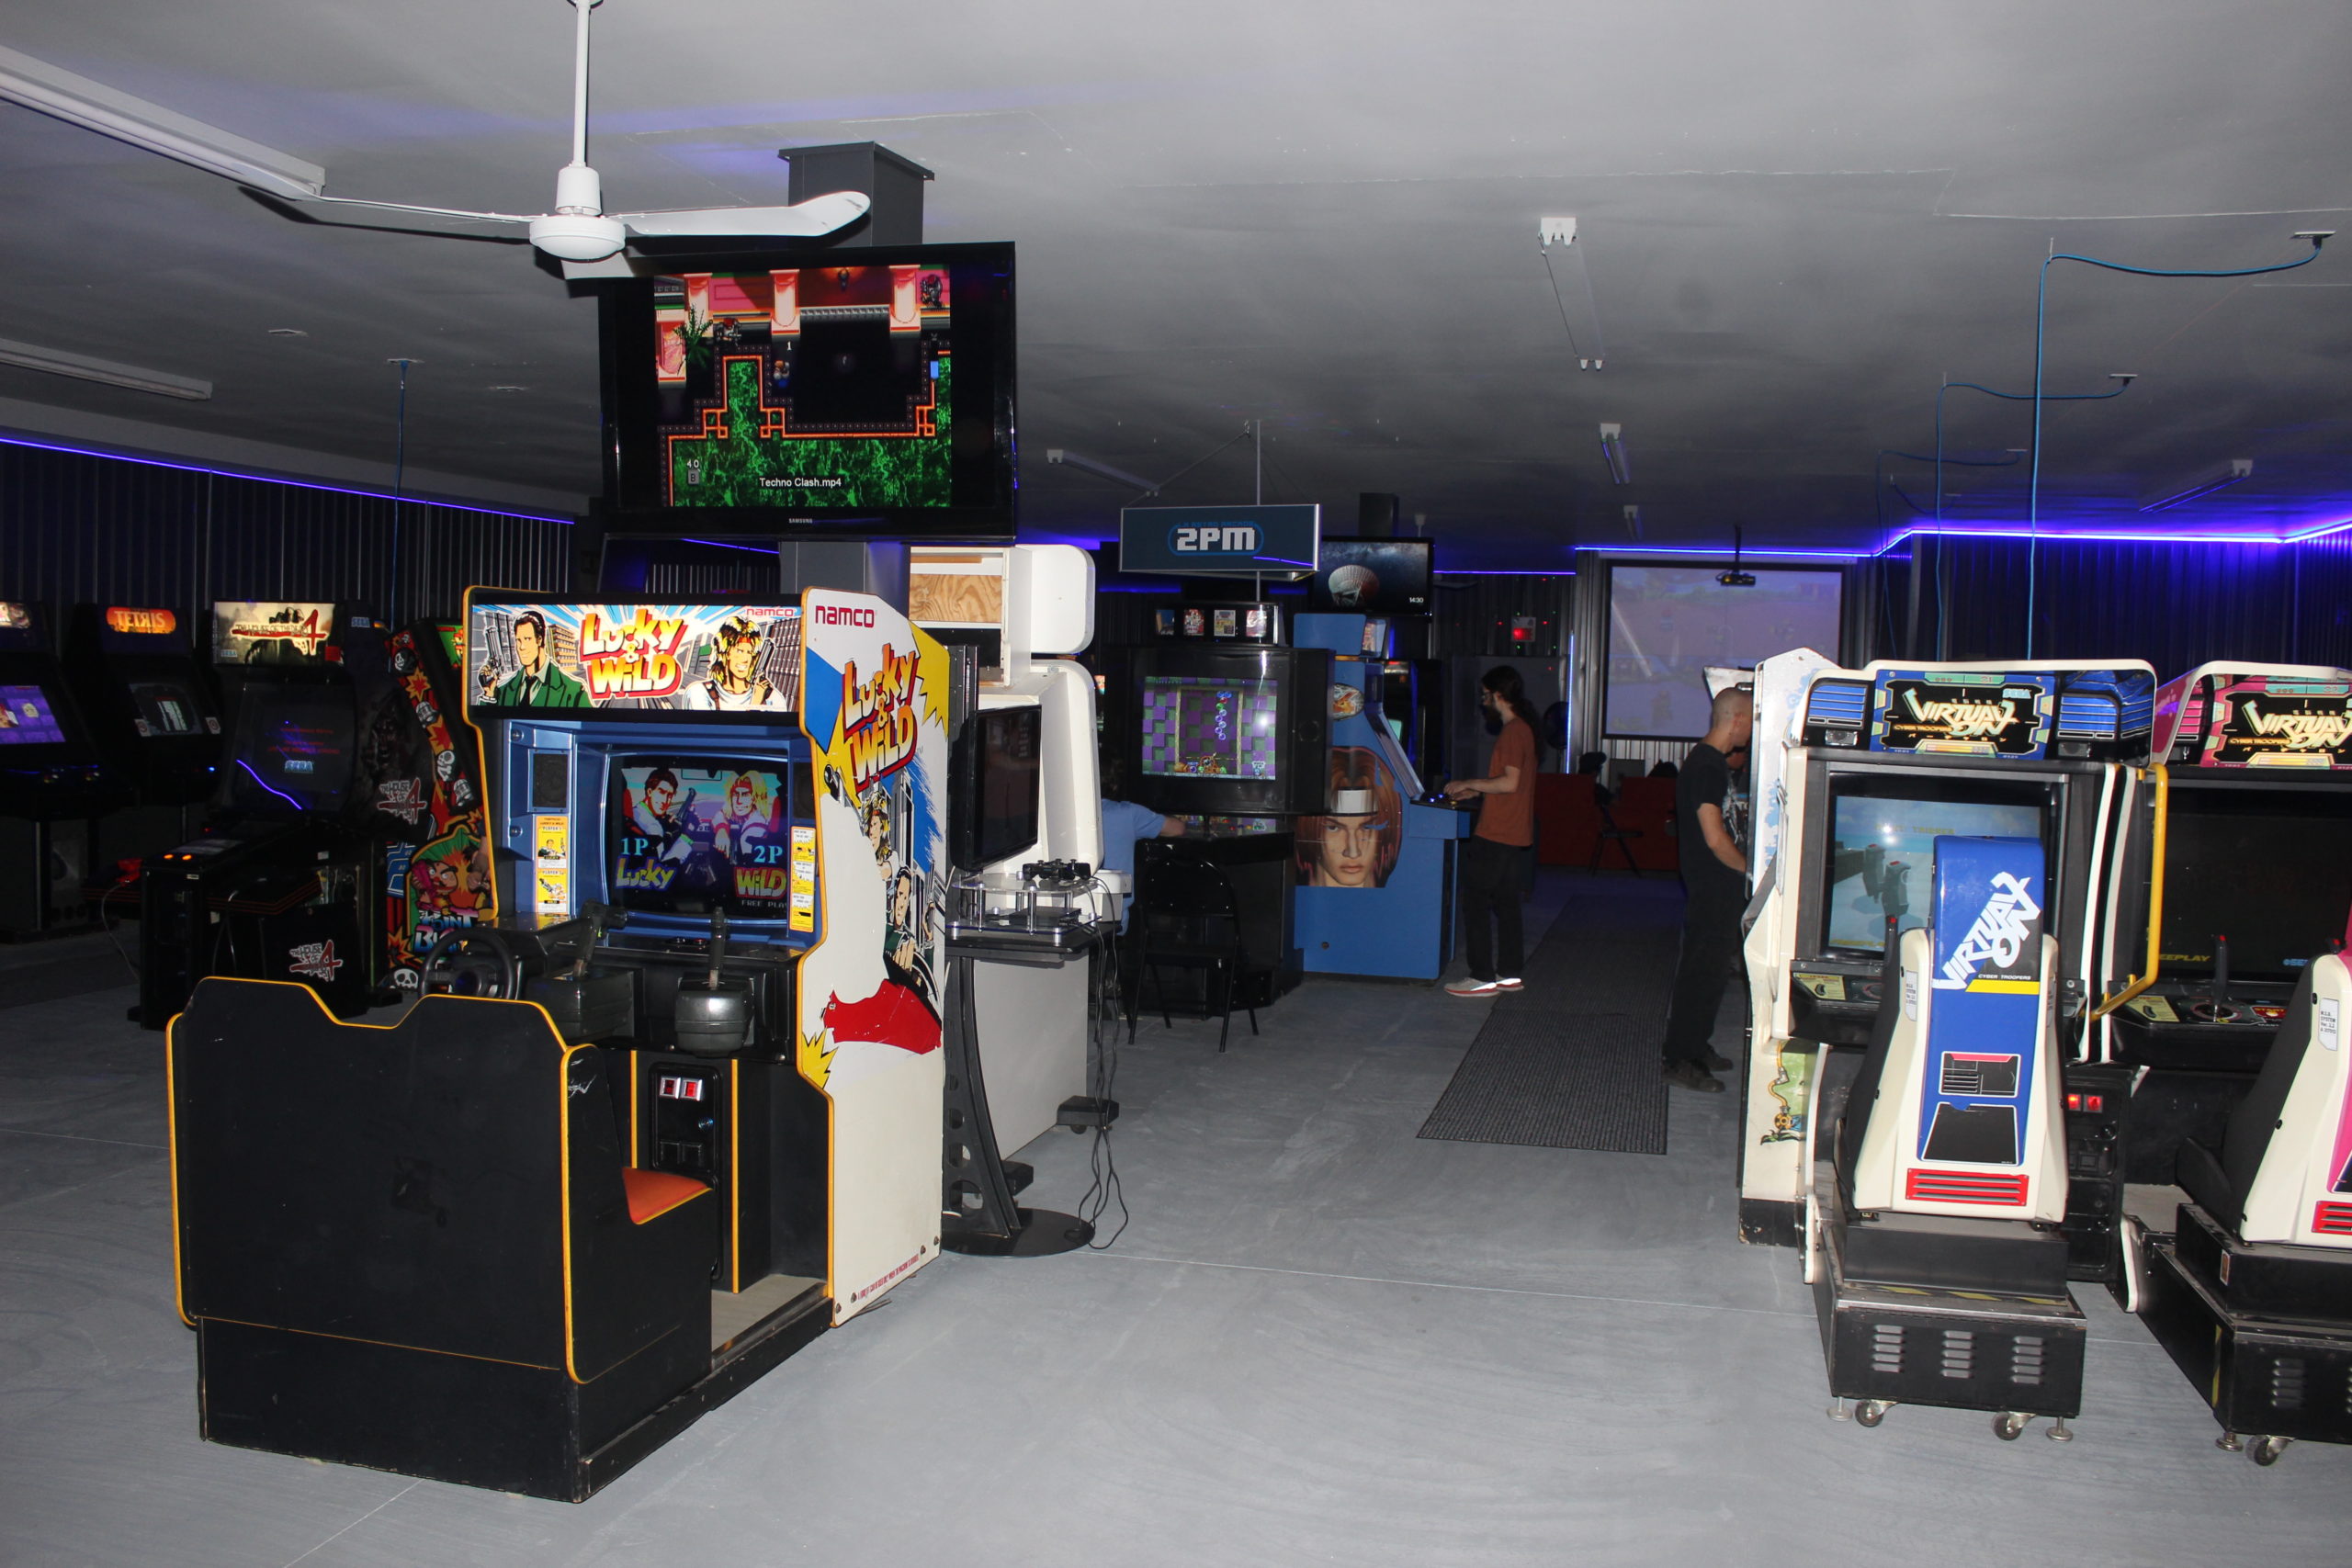 Les nostalgiques de la belle époque des salles d'arcade seront ravis de retrouver leur ambiance alors que les plus jeunes seront fascinés